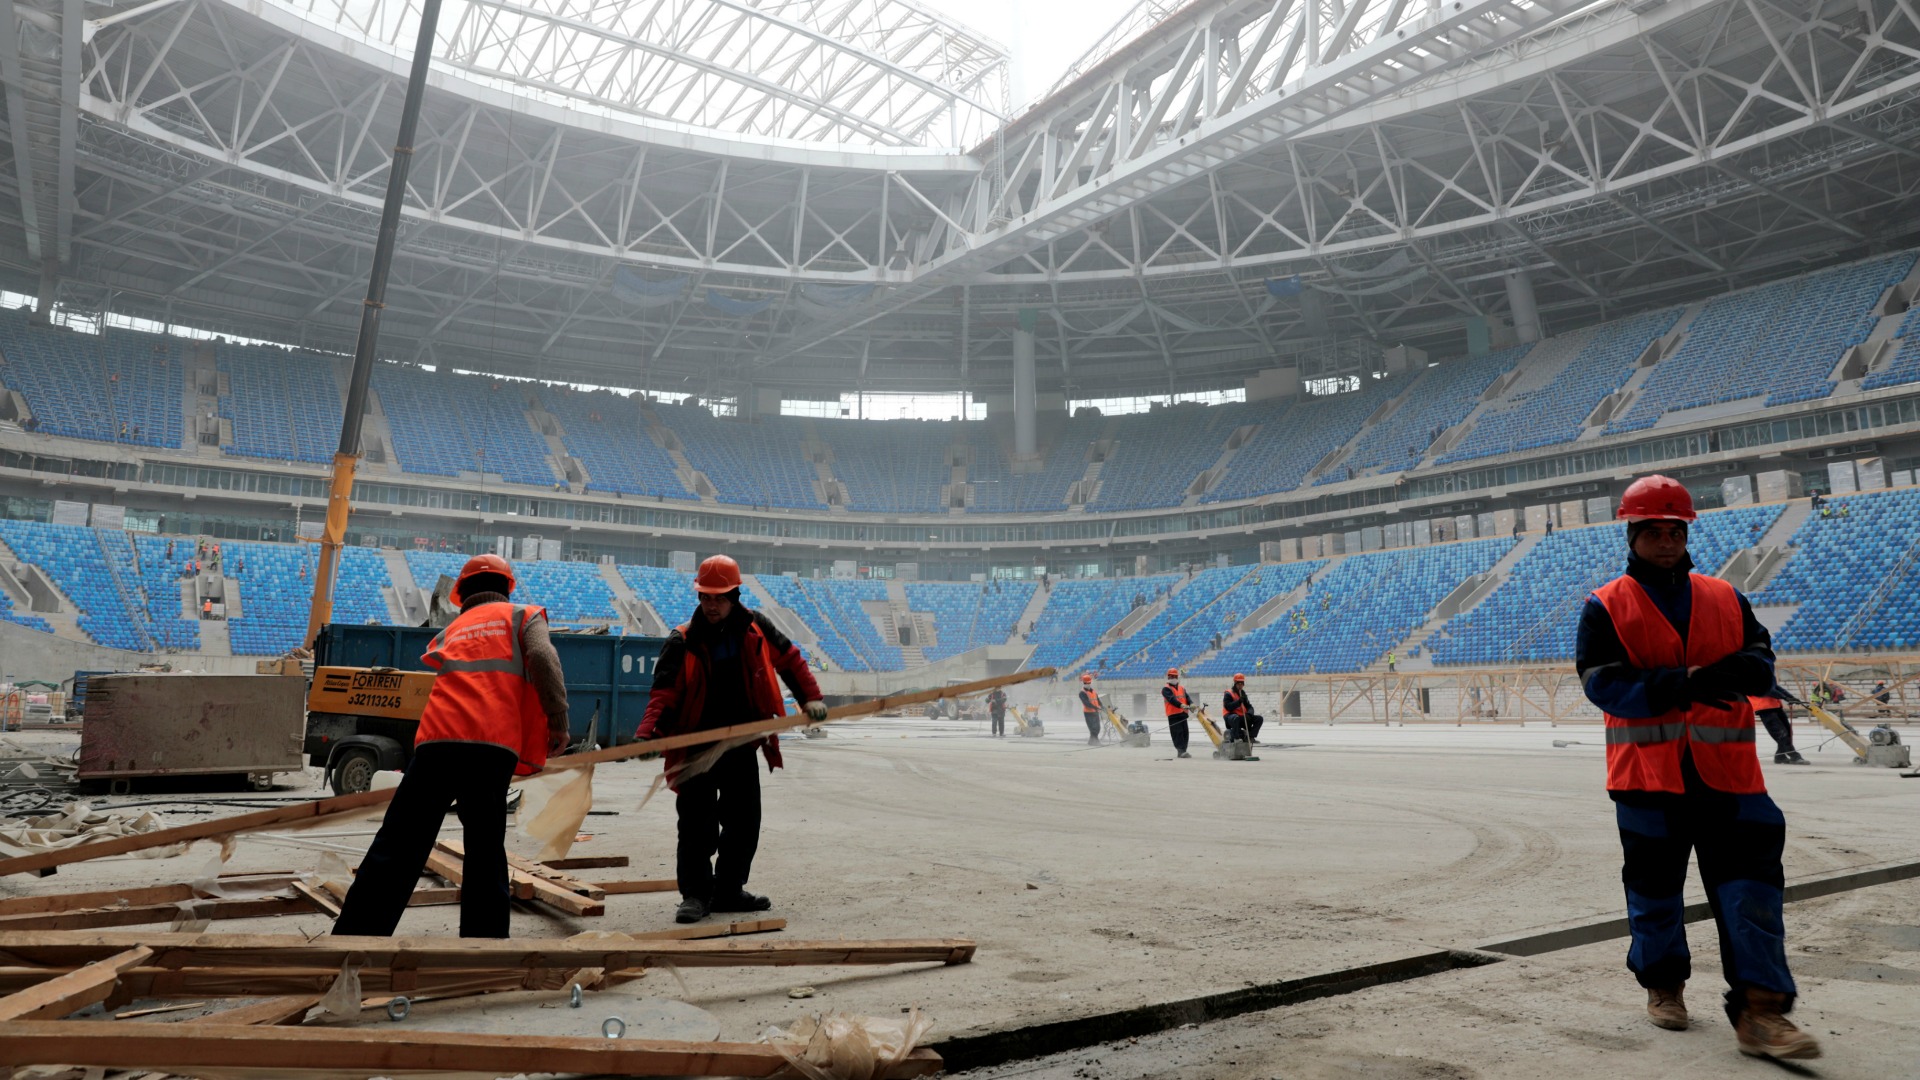 La FIFA admite que los trabajadores del Mundial de Rusia han sufrido abusos laborales